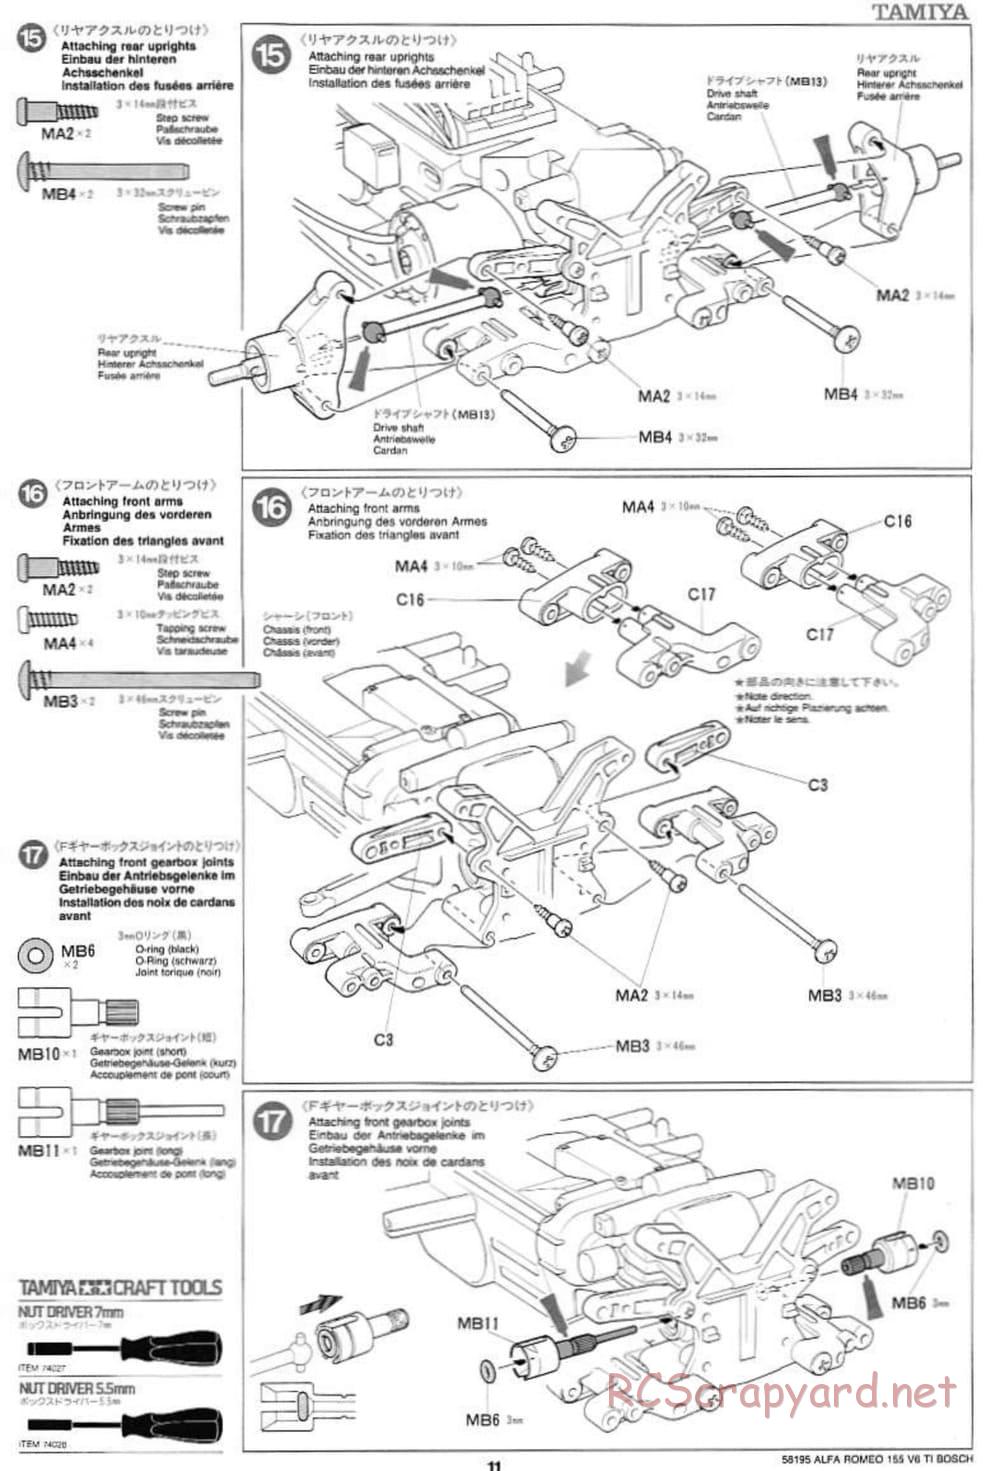 Tamiya - Alfa Romeo 155 V6 TI BOSCH - TL-01 Chassis - Manual - Page 11